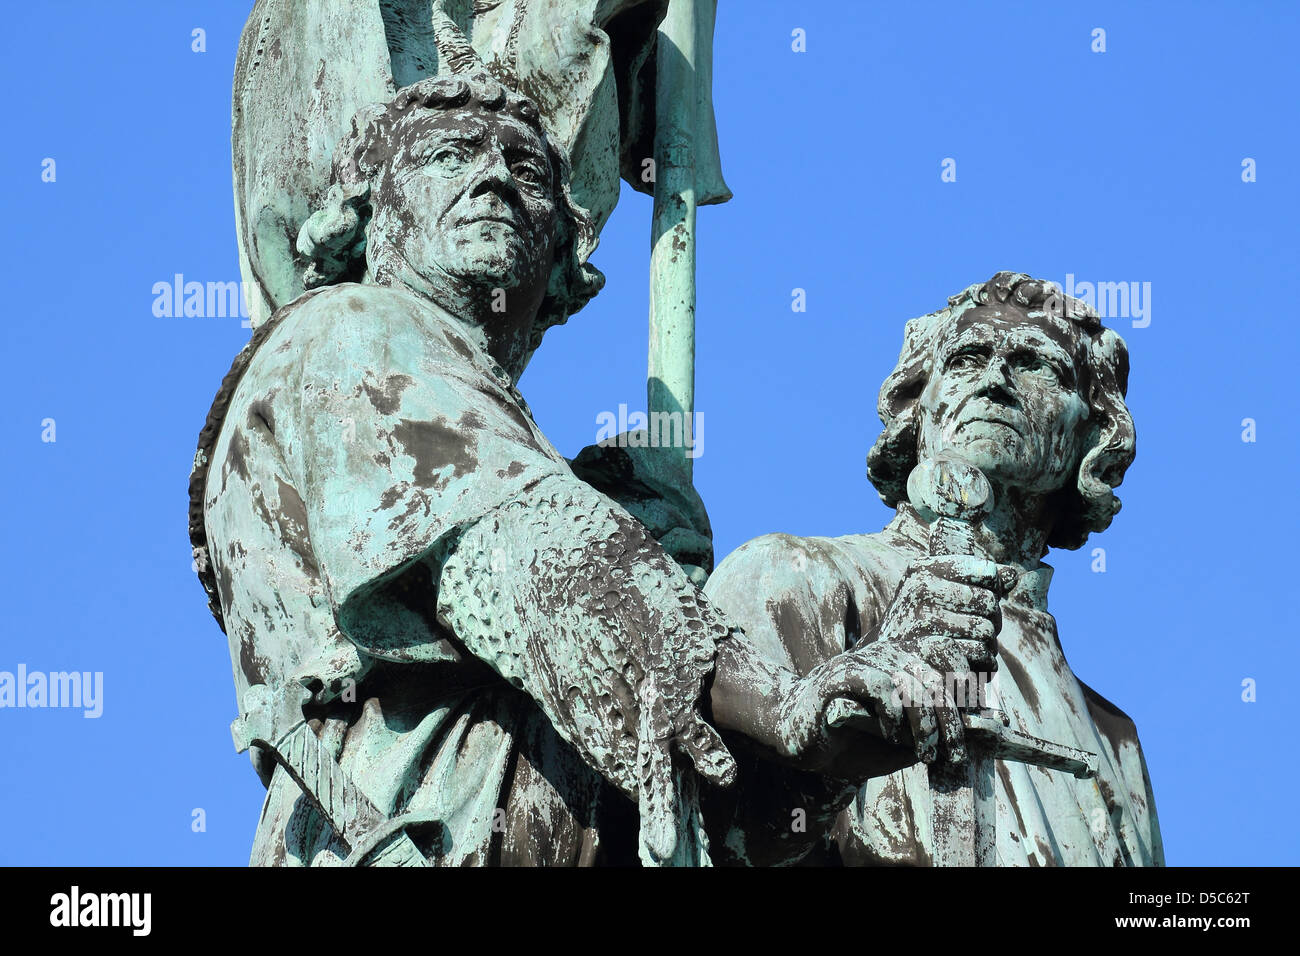 belgium, bruges, statue Stock Photo